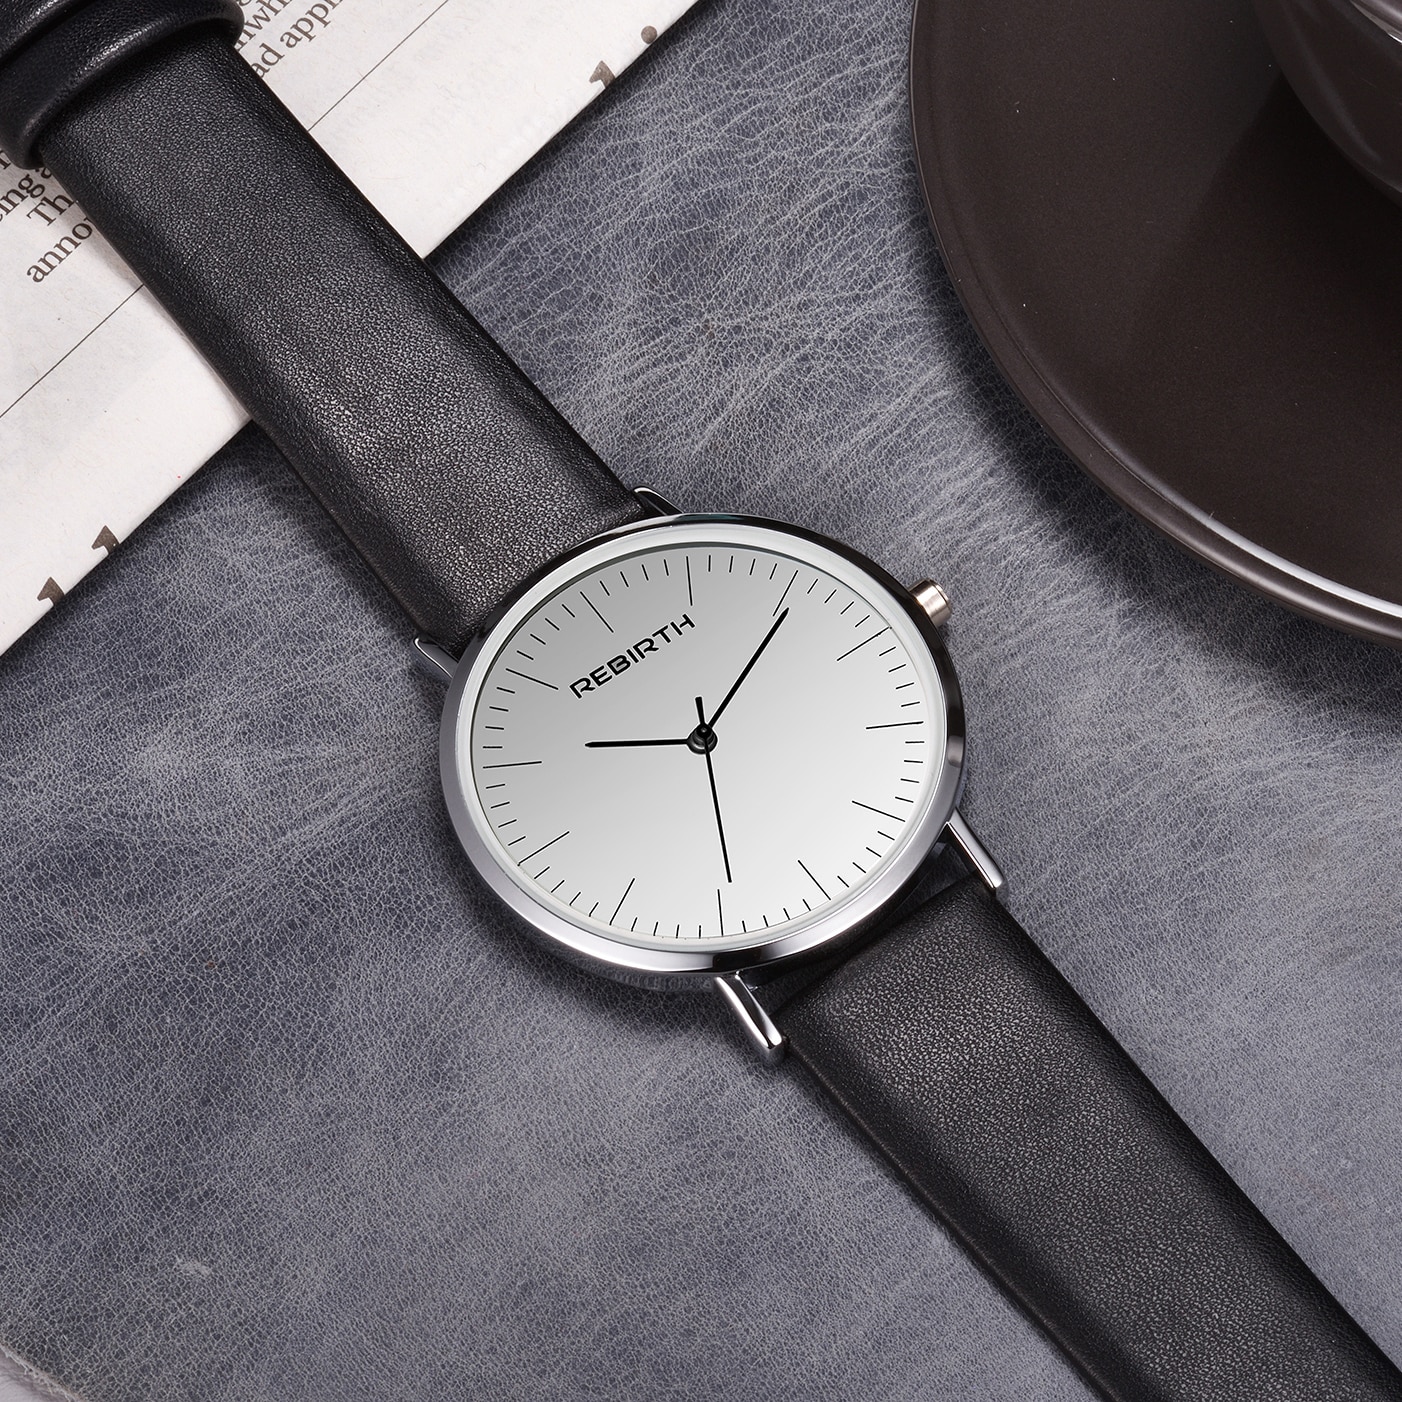 Vintage Klassieke Unisex Quartz Horloge Elegante Eenvoudige Lederen Band Horloge Mannen Vrouwen Casual Stijl Horloge